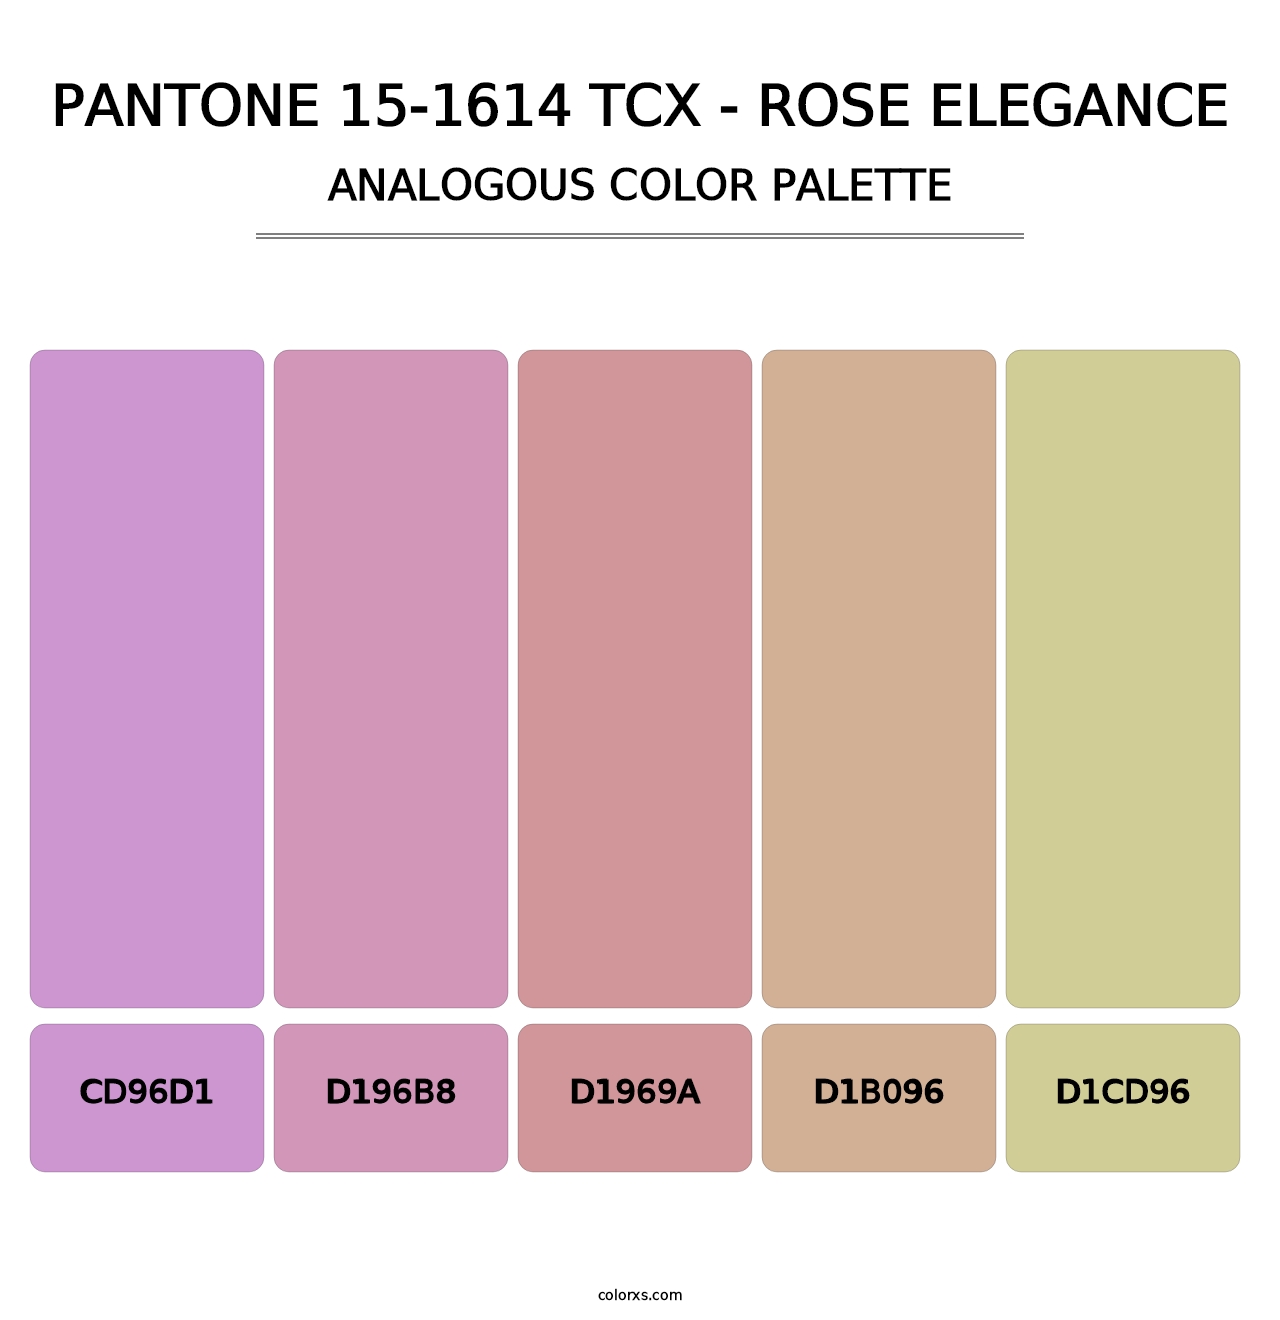 PANTONE 15-1614 TCX - Rose Elegance - Analogous Color Palette